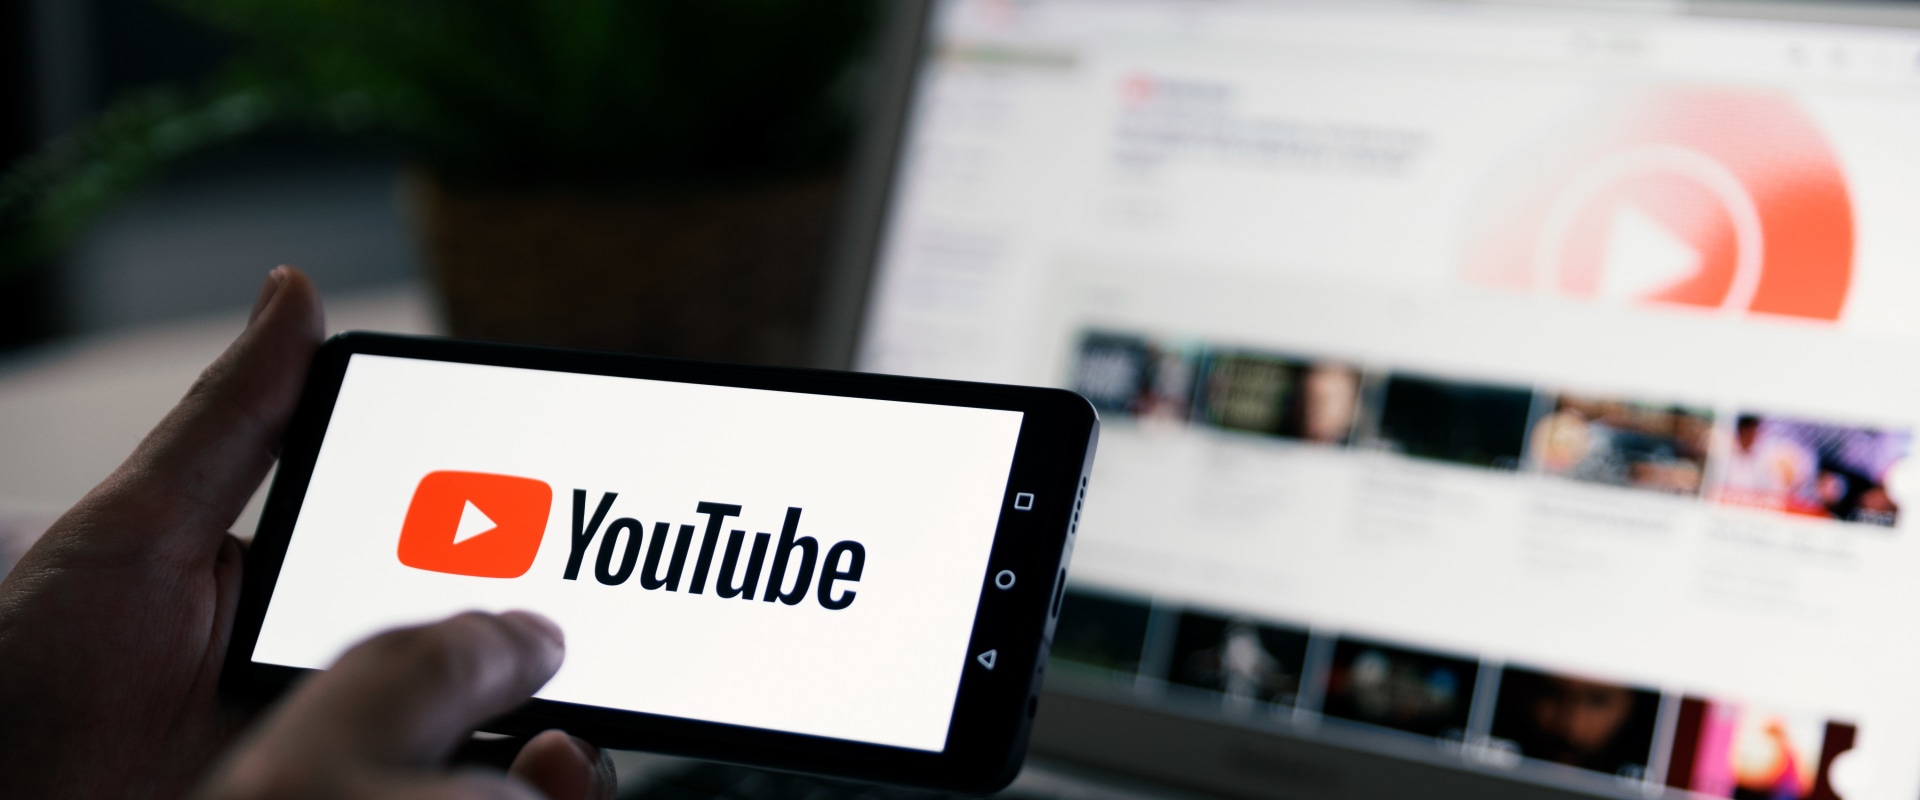 Le visualizzazioni di YouTube possono guadagnare denaro?